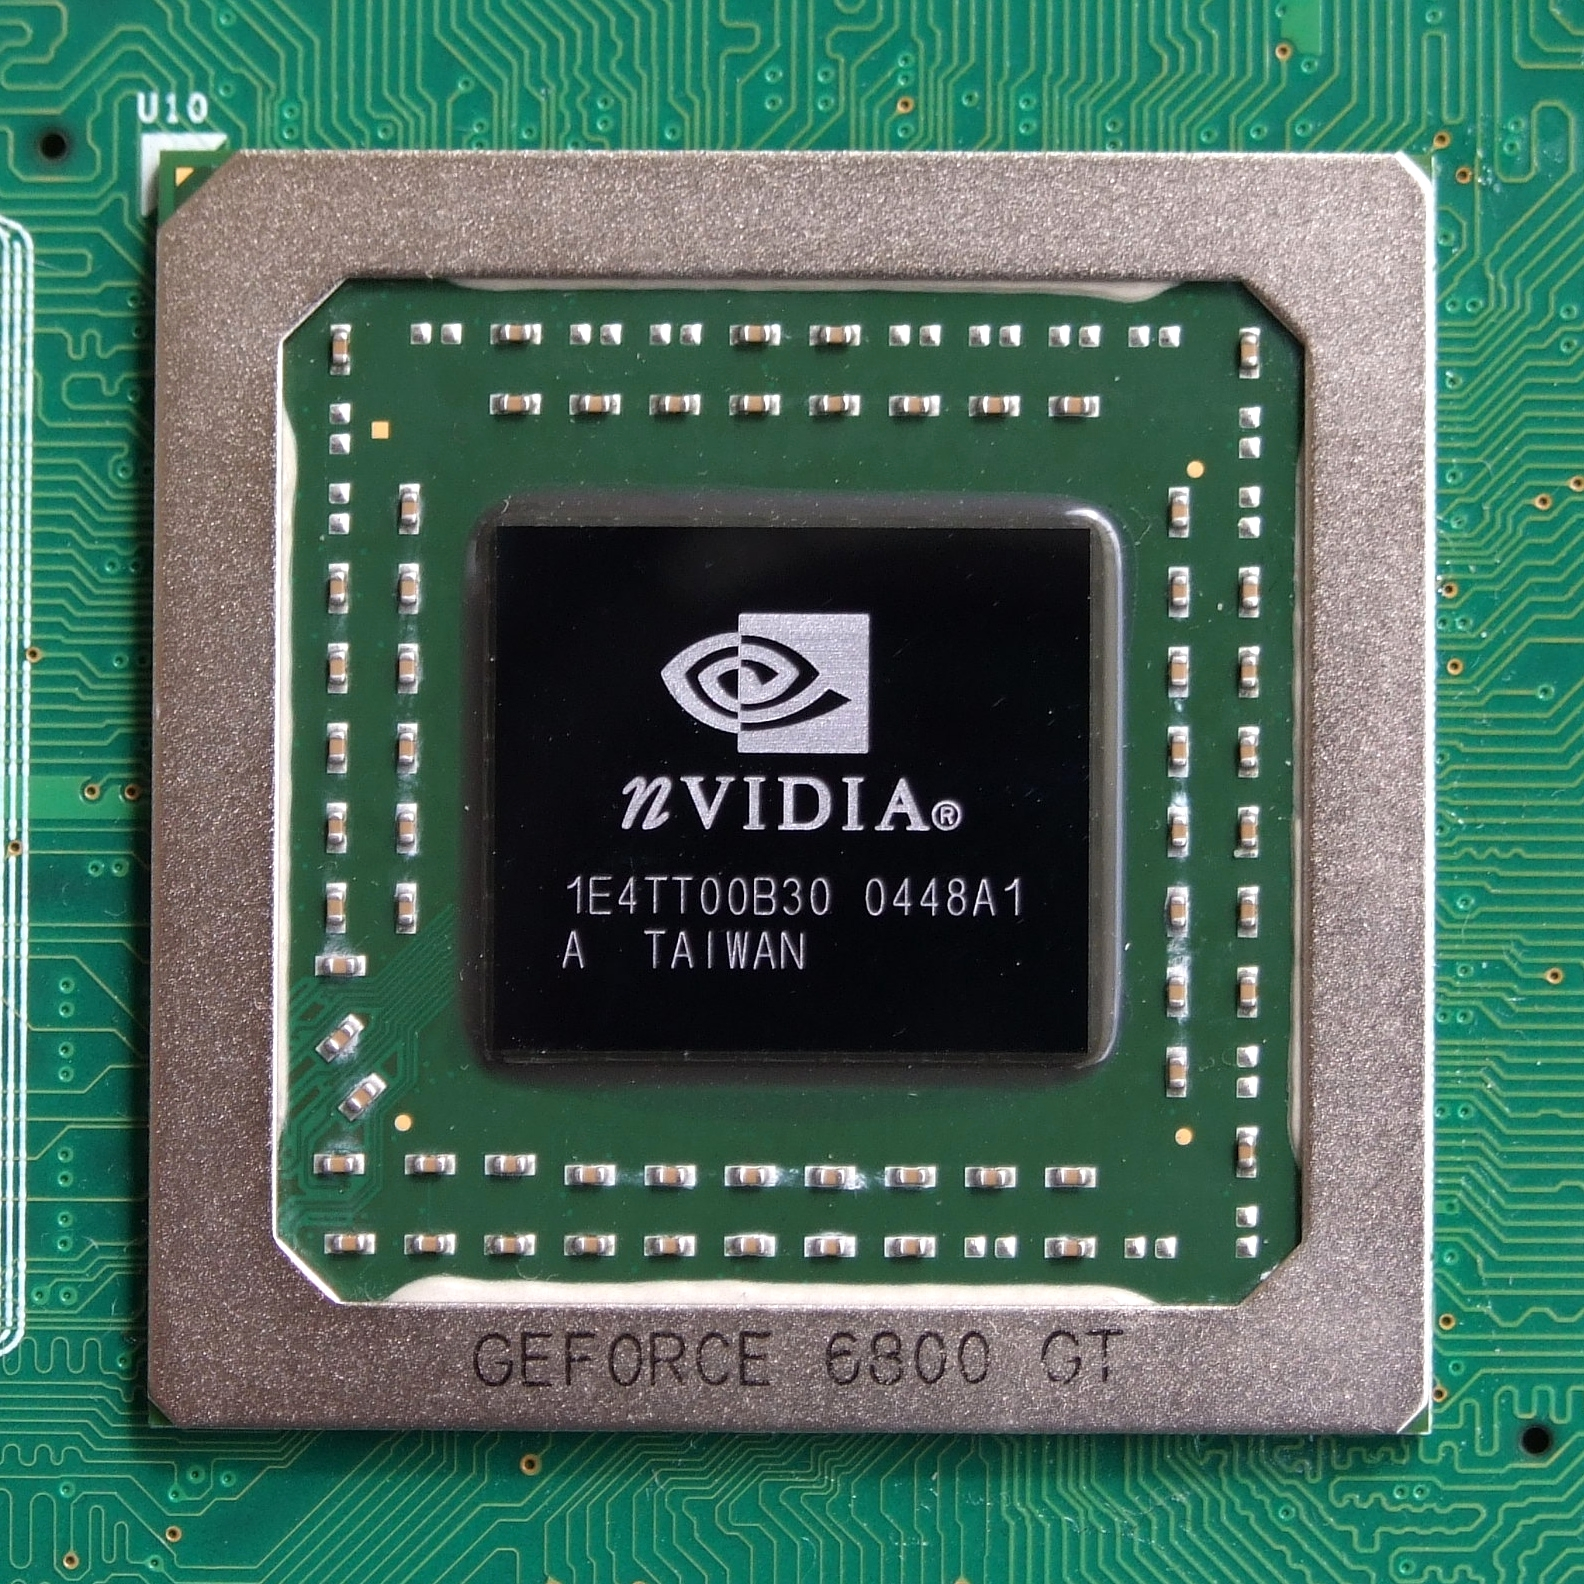 照片中提到了U10、NVIDIA®、1E4TTOOB30 0448A1，跟英偉達有關，包含了NVIDIA Geforce 6芯片、NVIDIA GeForce 6800、圖形處理單元、GeForce 6系列